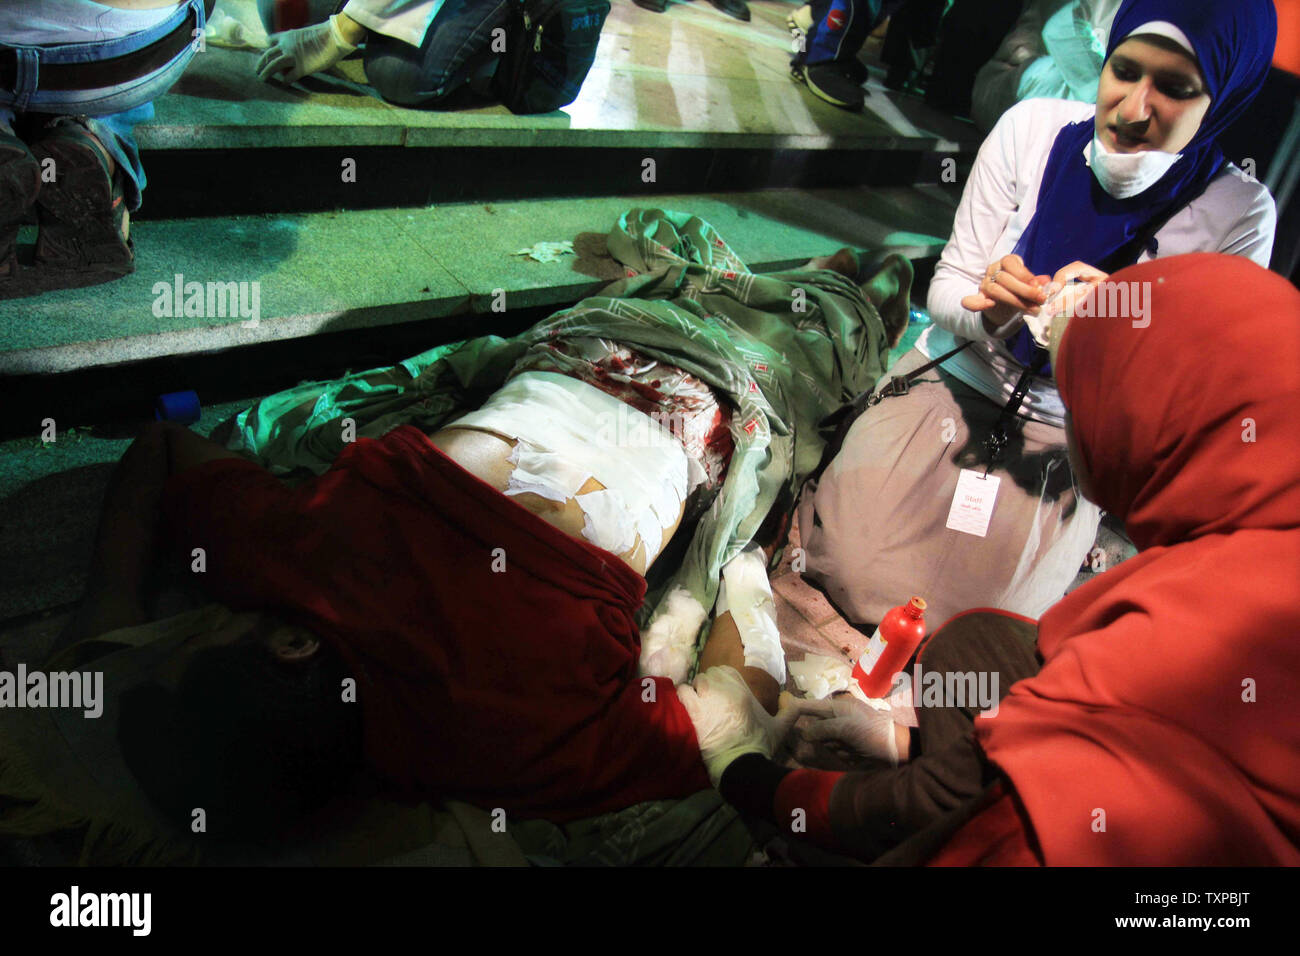 Ärzte behandeln ein Verfechter von Ägyptens gestürzten Präsidenten Mohammed Morsi bei Zusammenstößen mit Sicherheitskräften in Nasr City, wo pro-Mursi Demonstranten gehalten haben eine Wochen verletzt - lange Sit-in, in einem Feld Hospital in Kairo, Ägypten, 27. Juli 2013. Dutzende Menschen haben in der Nacht zu Zusammenstößen zwischen Sicherheitskräften und Anhängern des gestürzten Ägyptischen Präsidenten Mohamed Morsi getötet worden. UPI/Ahmed Jomaa Stockfoto